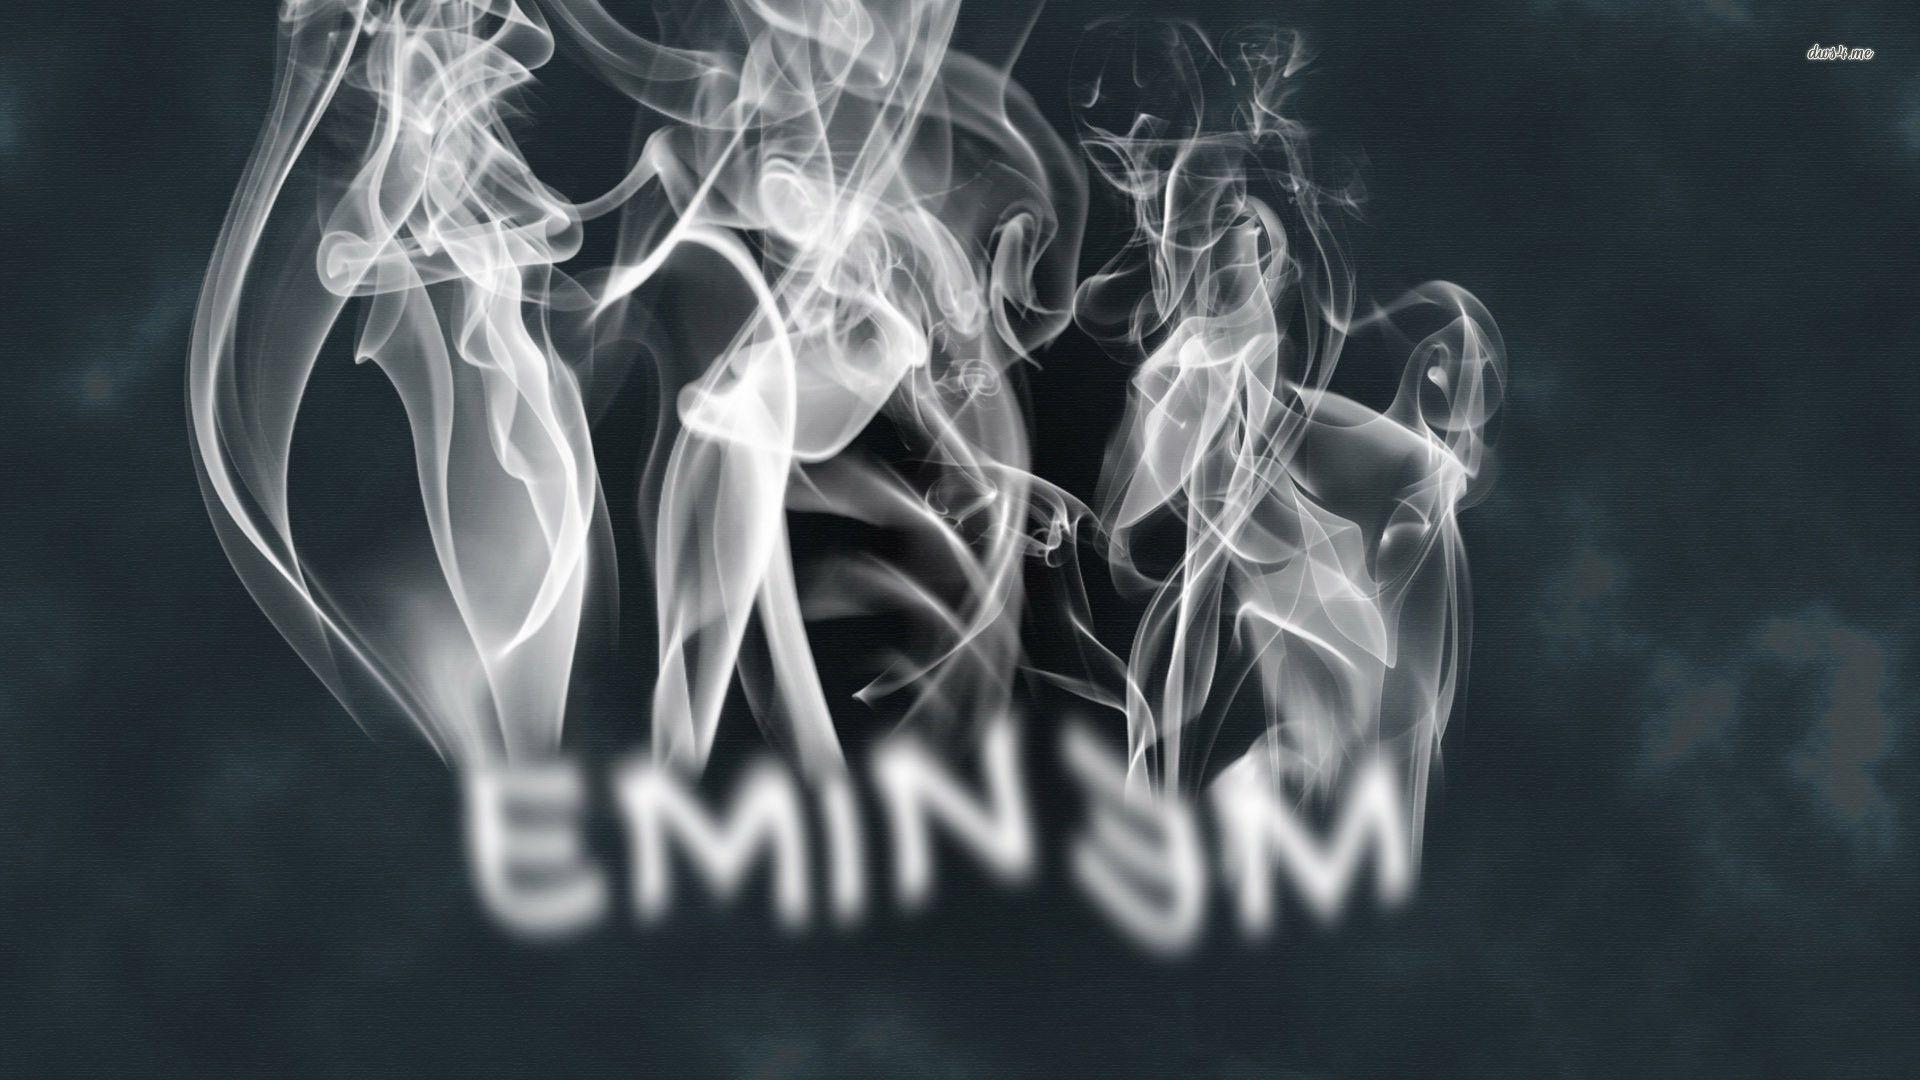 Eminem 2015 Wallpaper